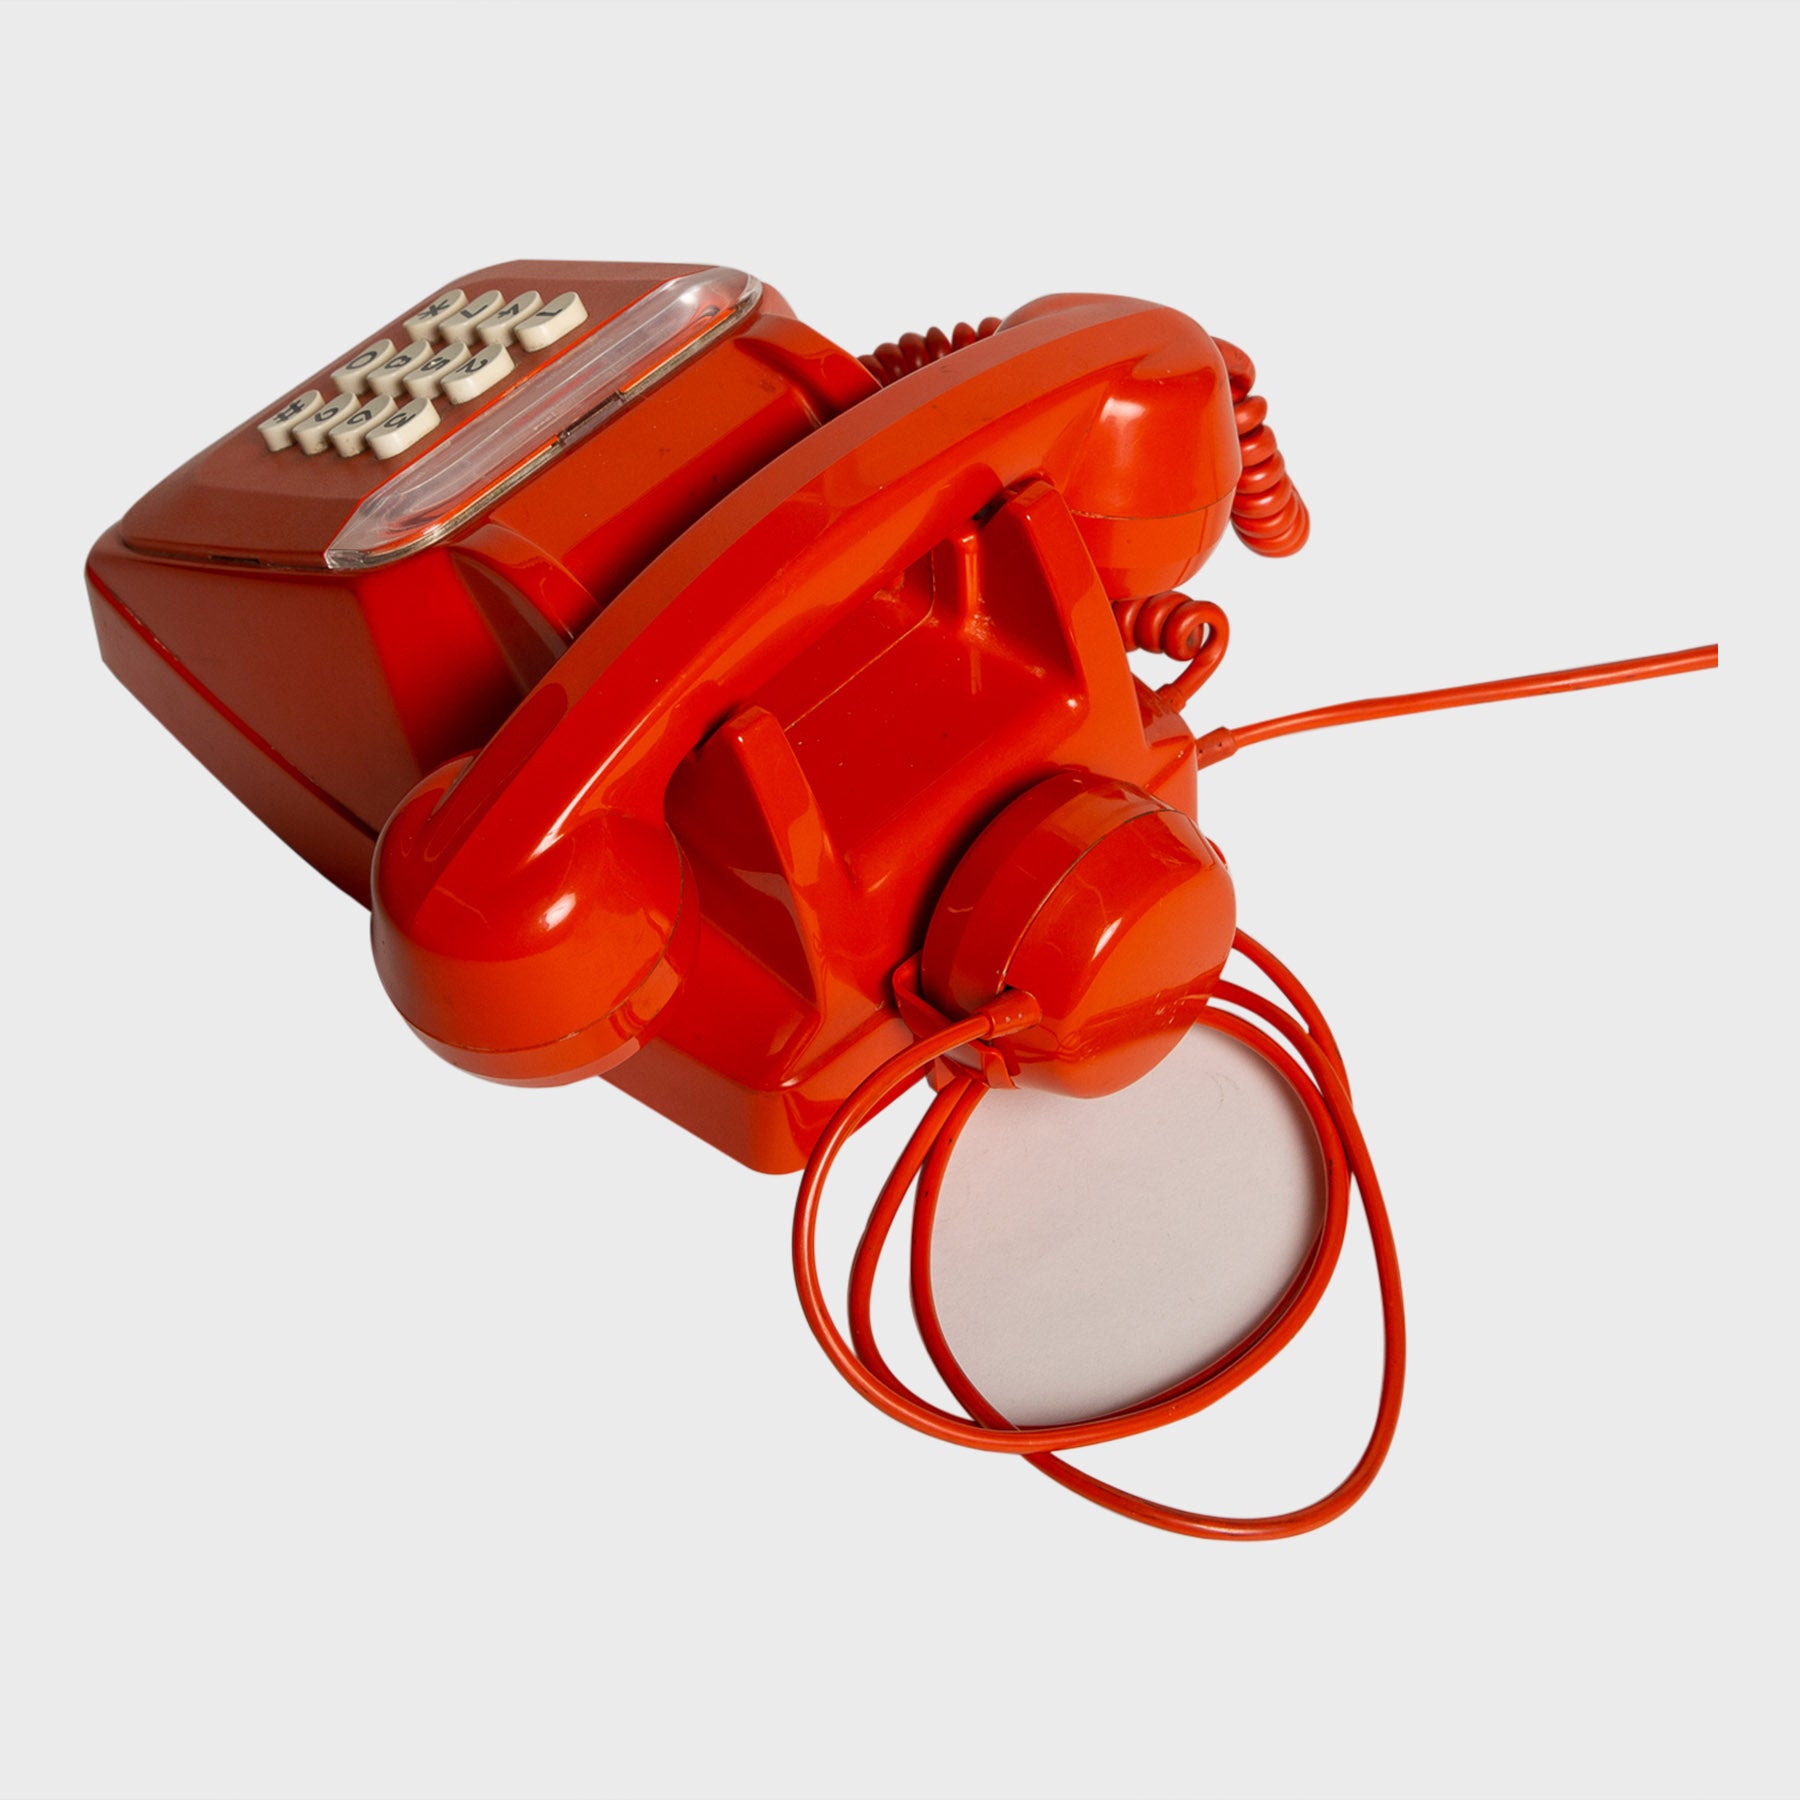 MAXFIELD PRIVATE COLLECTION | ORANGE TELEPHONE